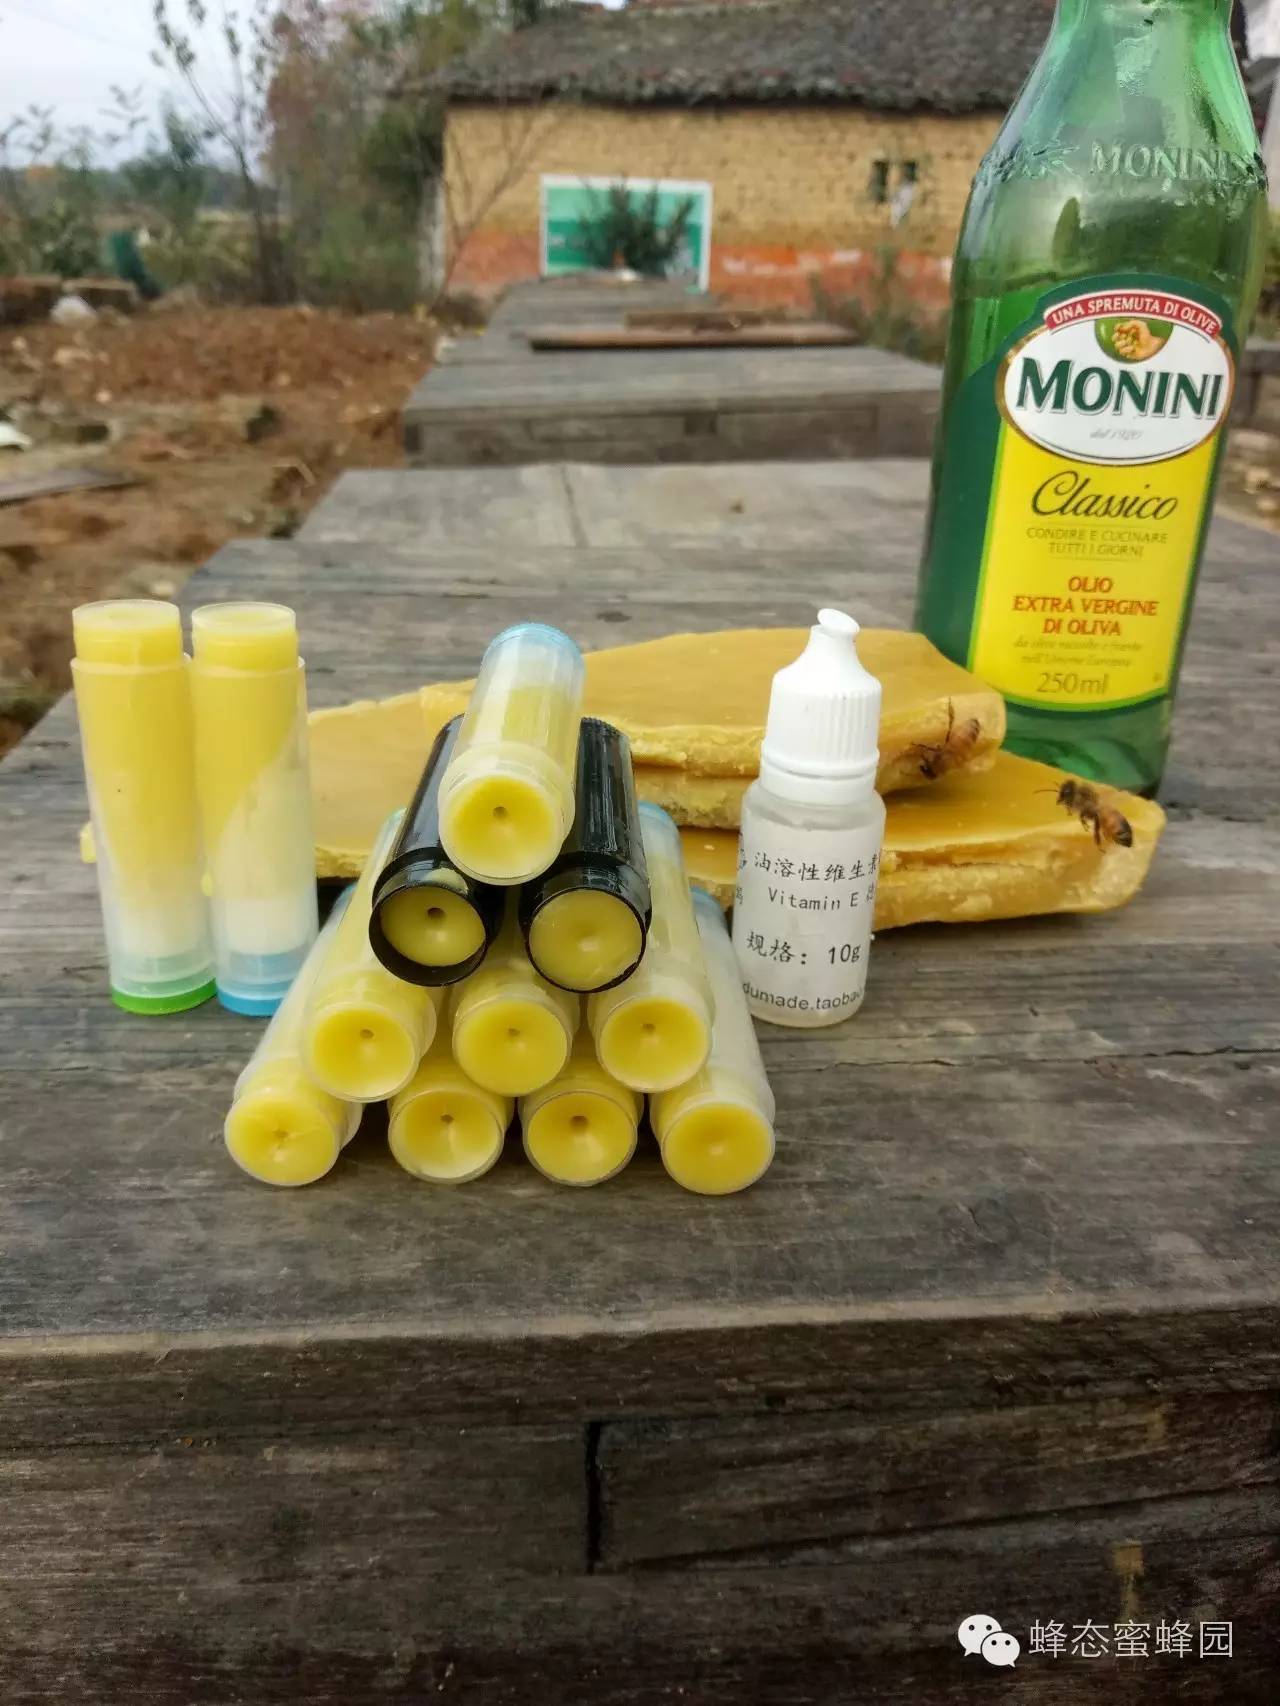 蜂蜜面膜怎样敷 湿热体质能喝蜂蜜 南岛三叶草蜂蜜疗效 柠檬蜂蜜减肥法 葛根粉可以加蜂蜜吗